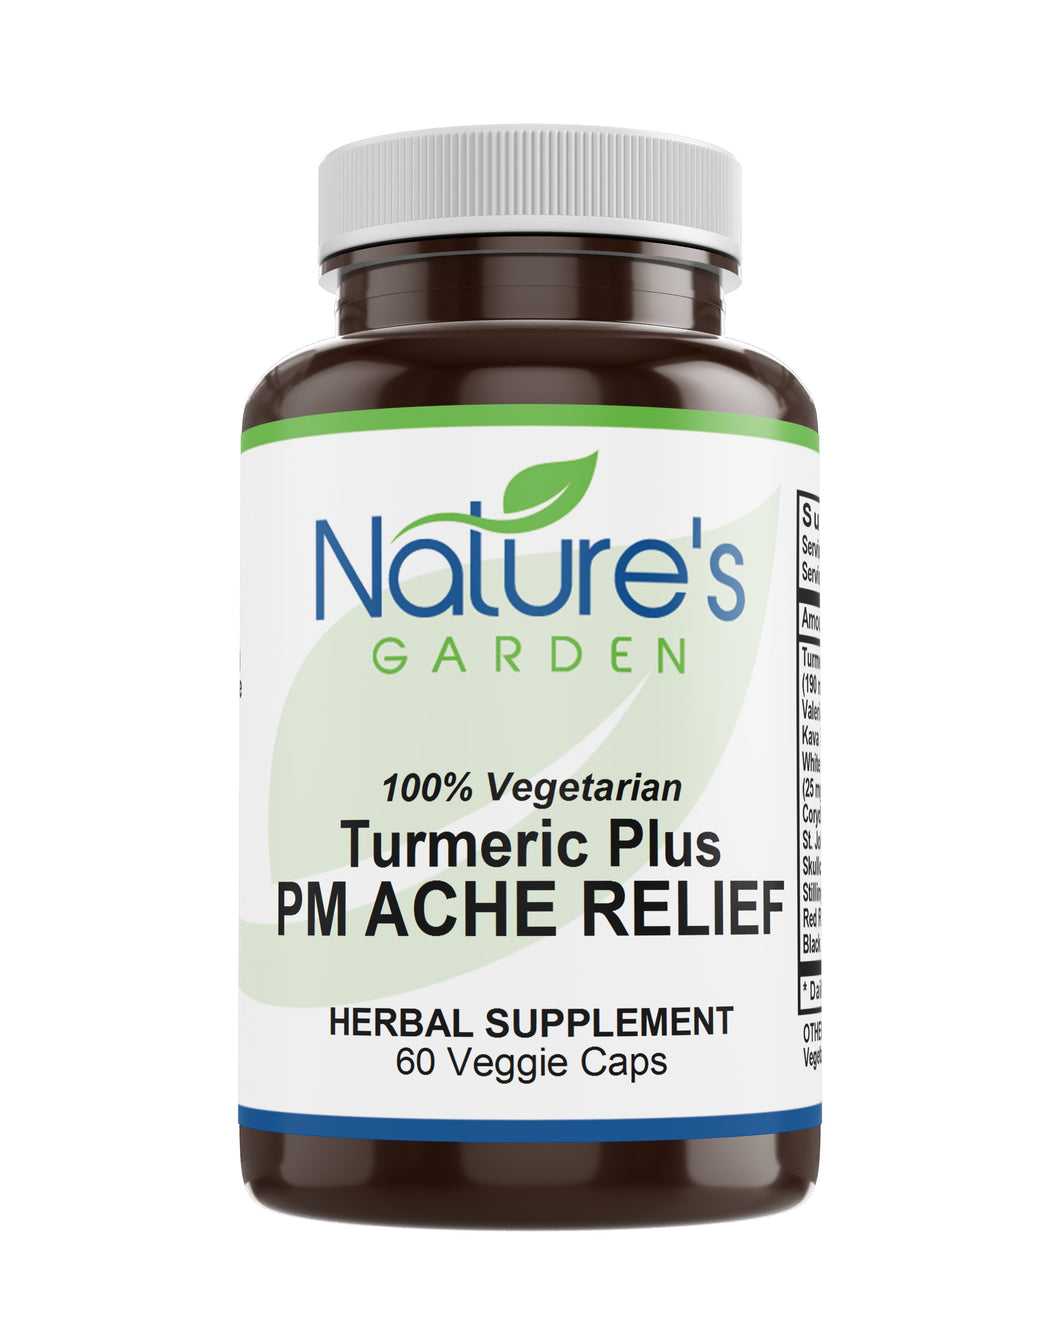 Turmeric Plus PM Ache Relief - 60 Veggie Caps